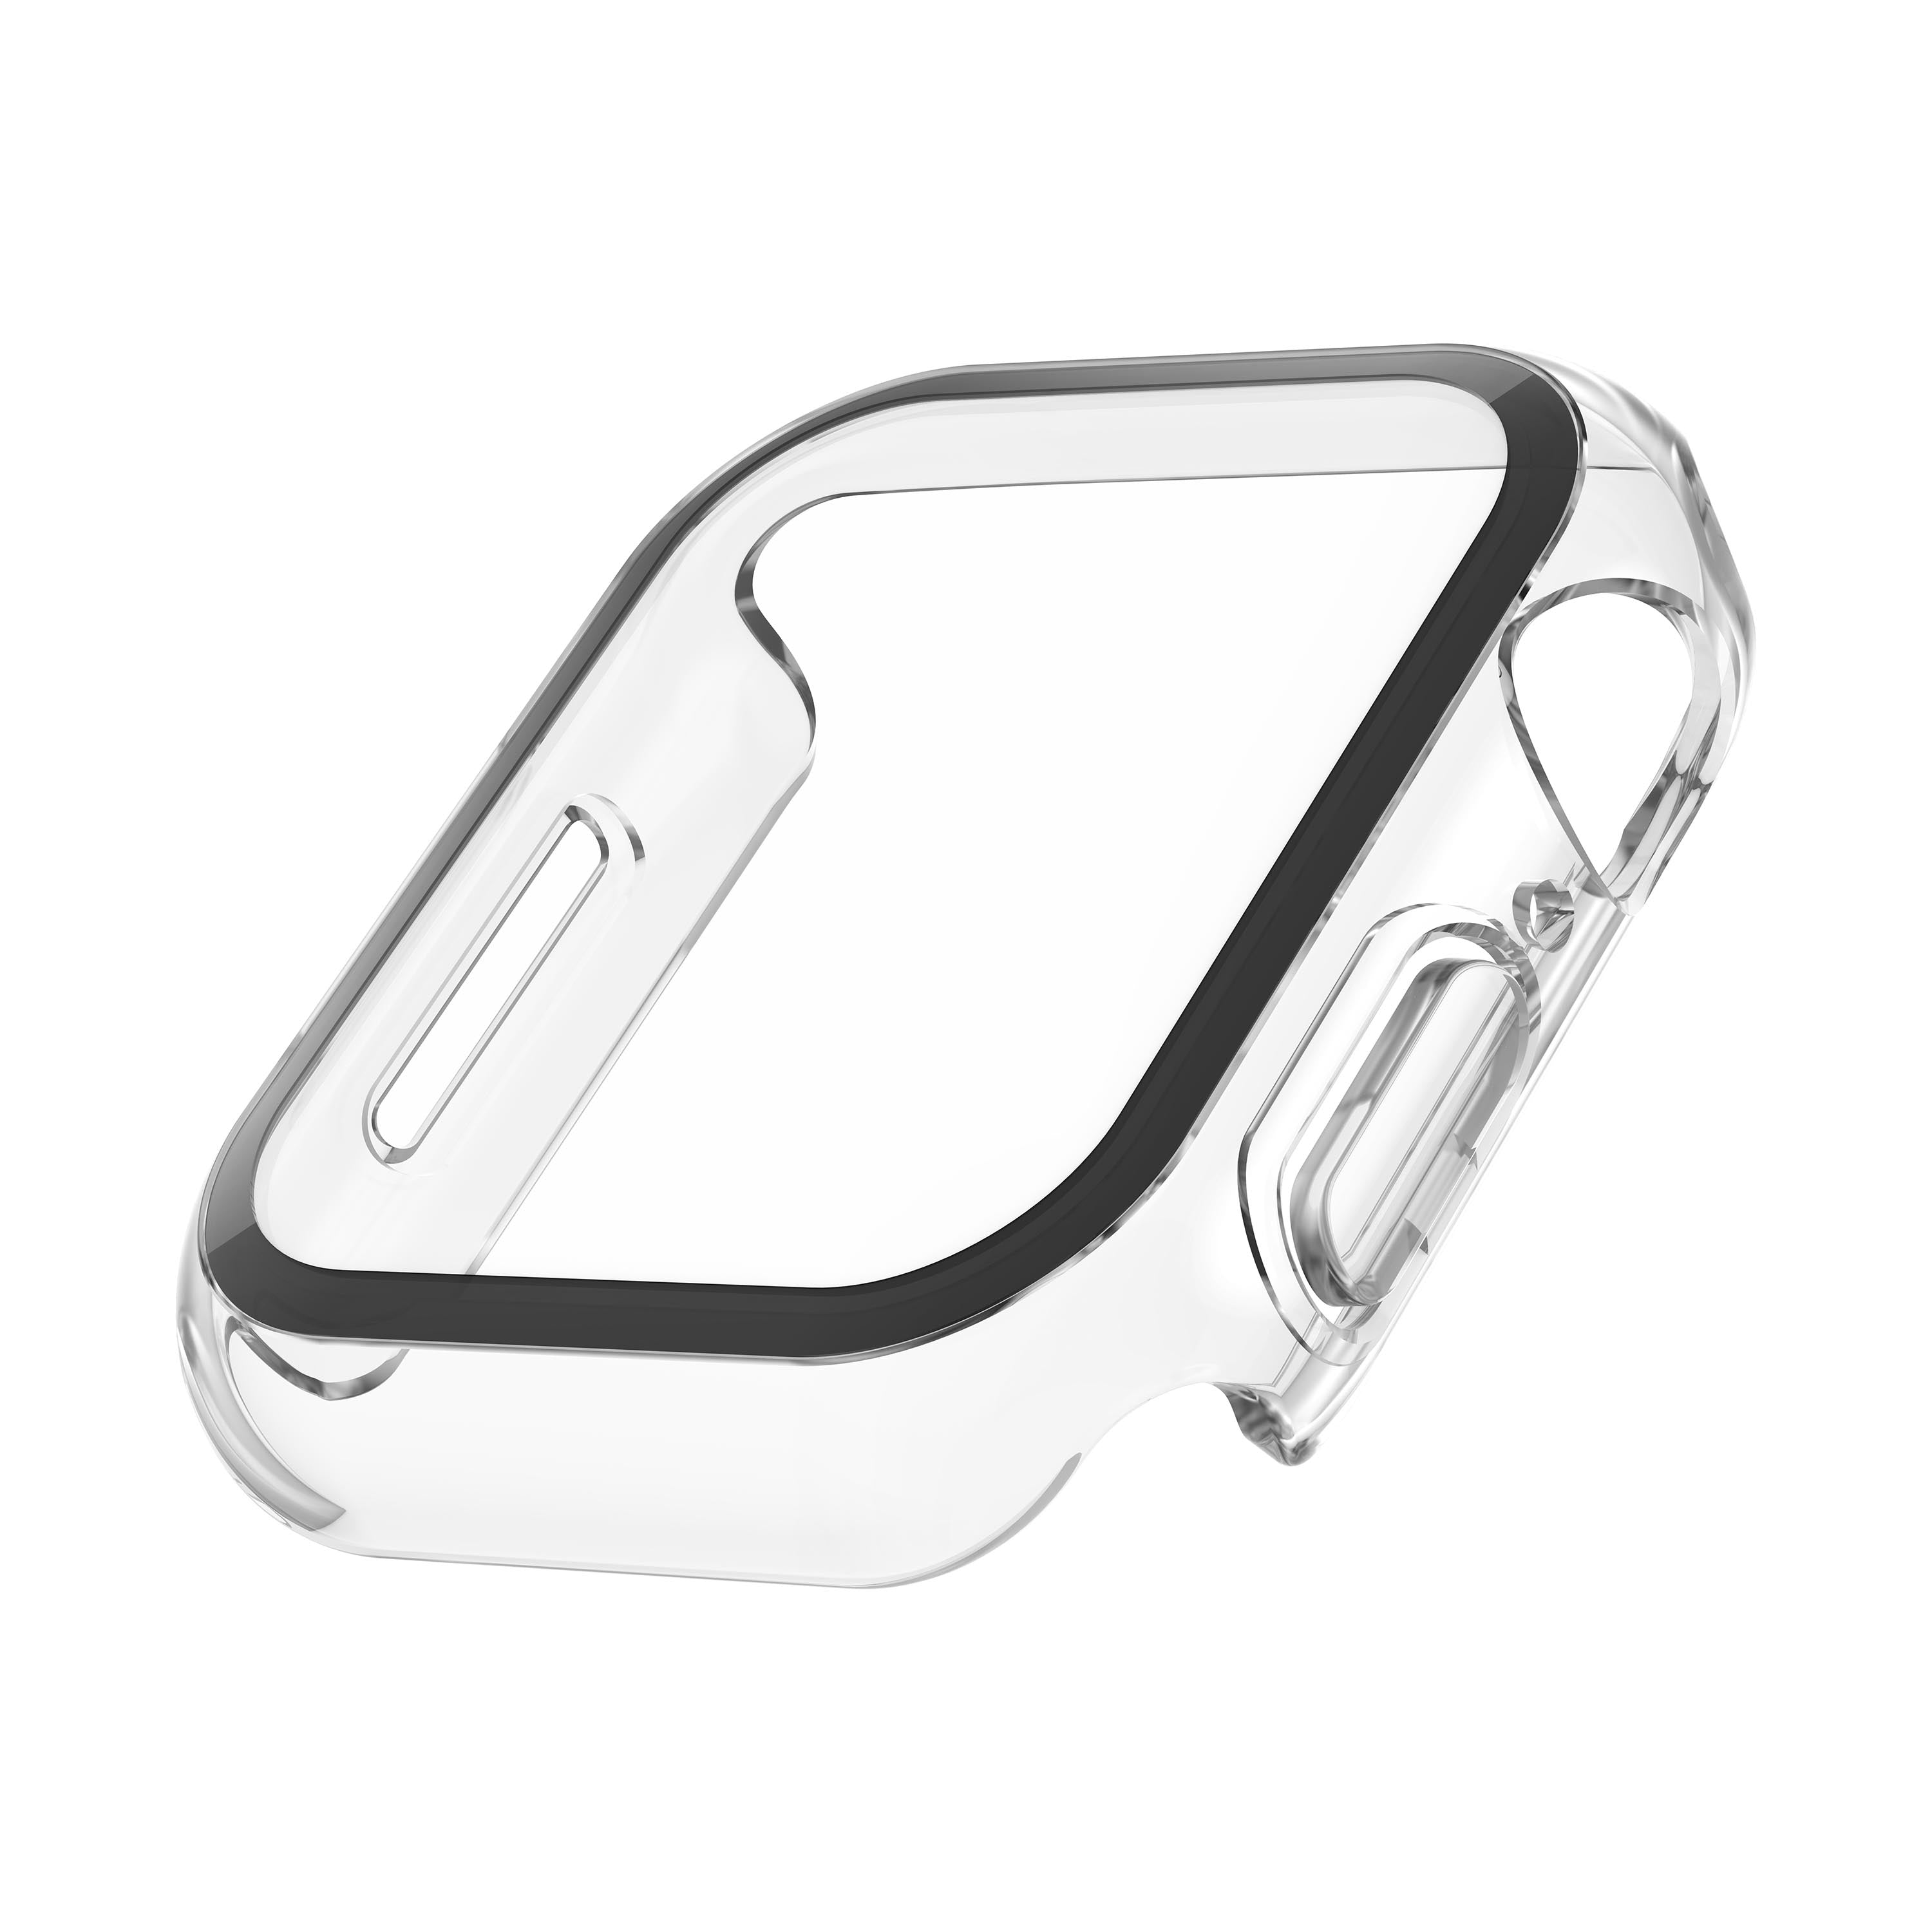 Protección de pantalla de cristal para todos los modelos de iPhone -  Rossellimac